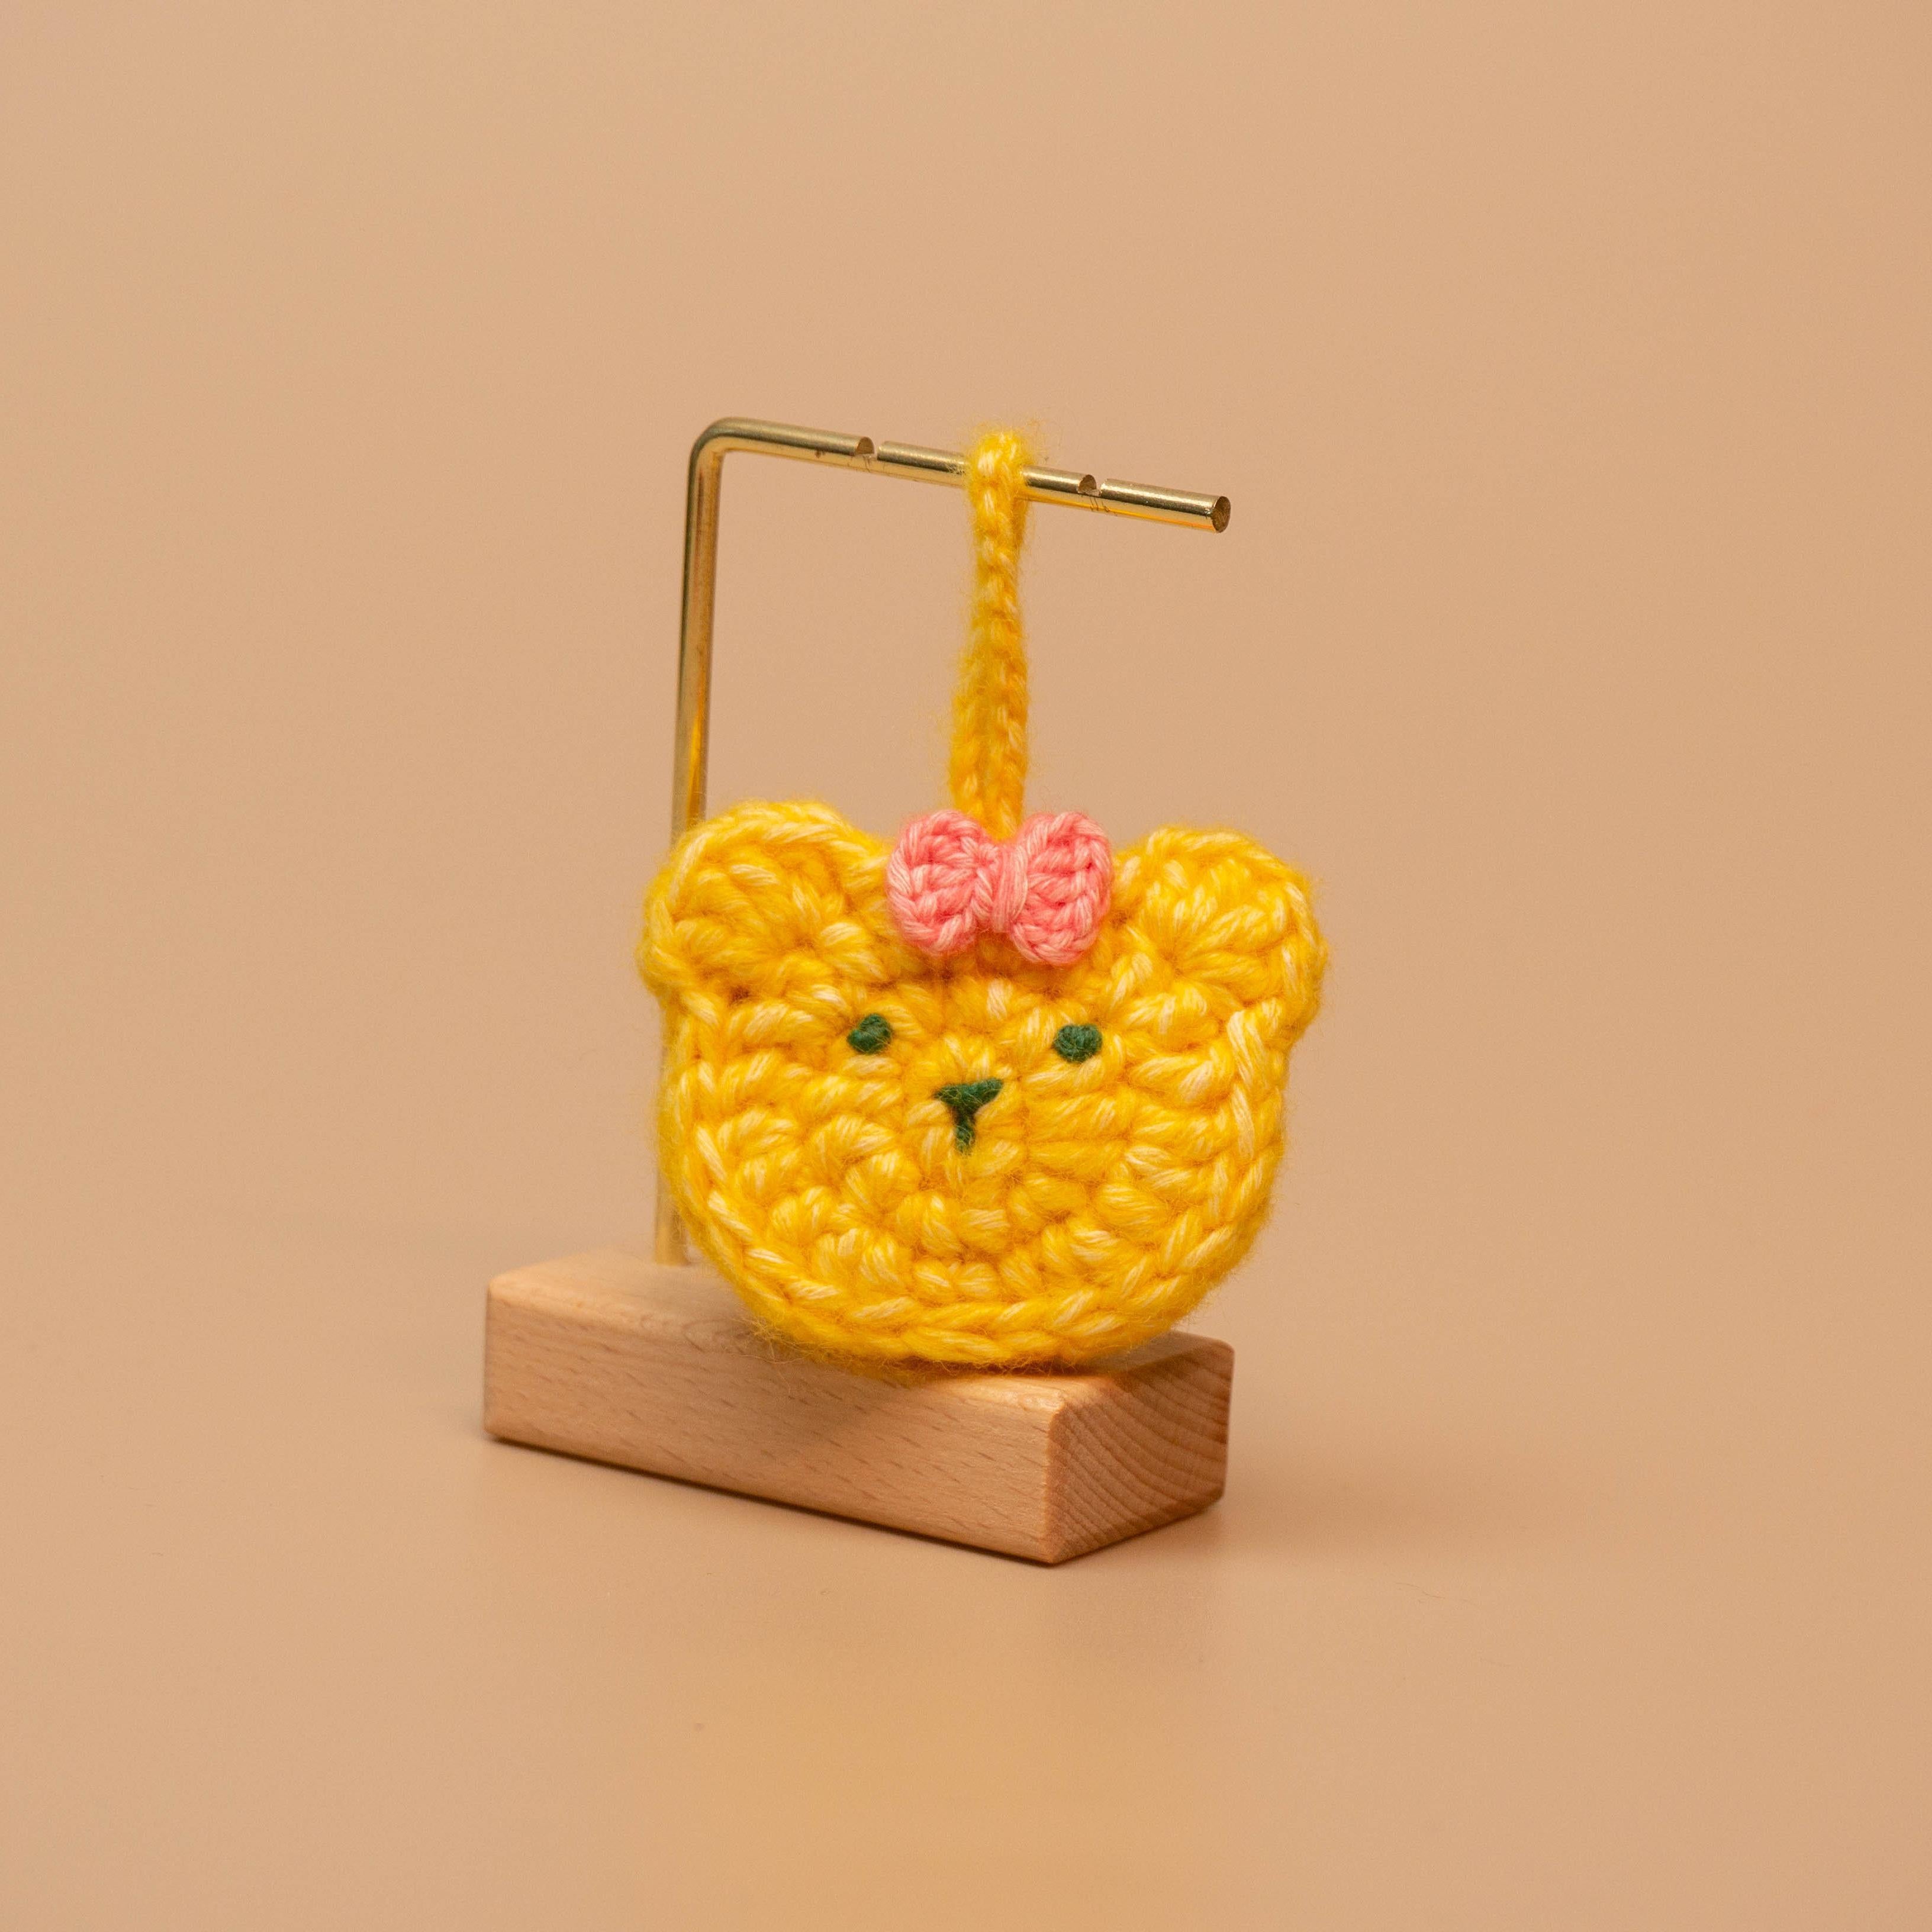 Plush Christmas Tree Crochet Kit – seelycrochet